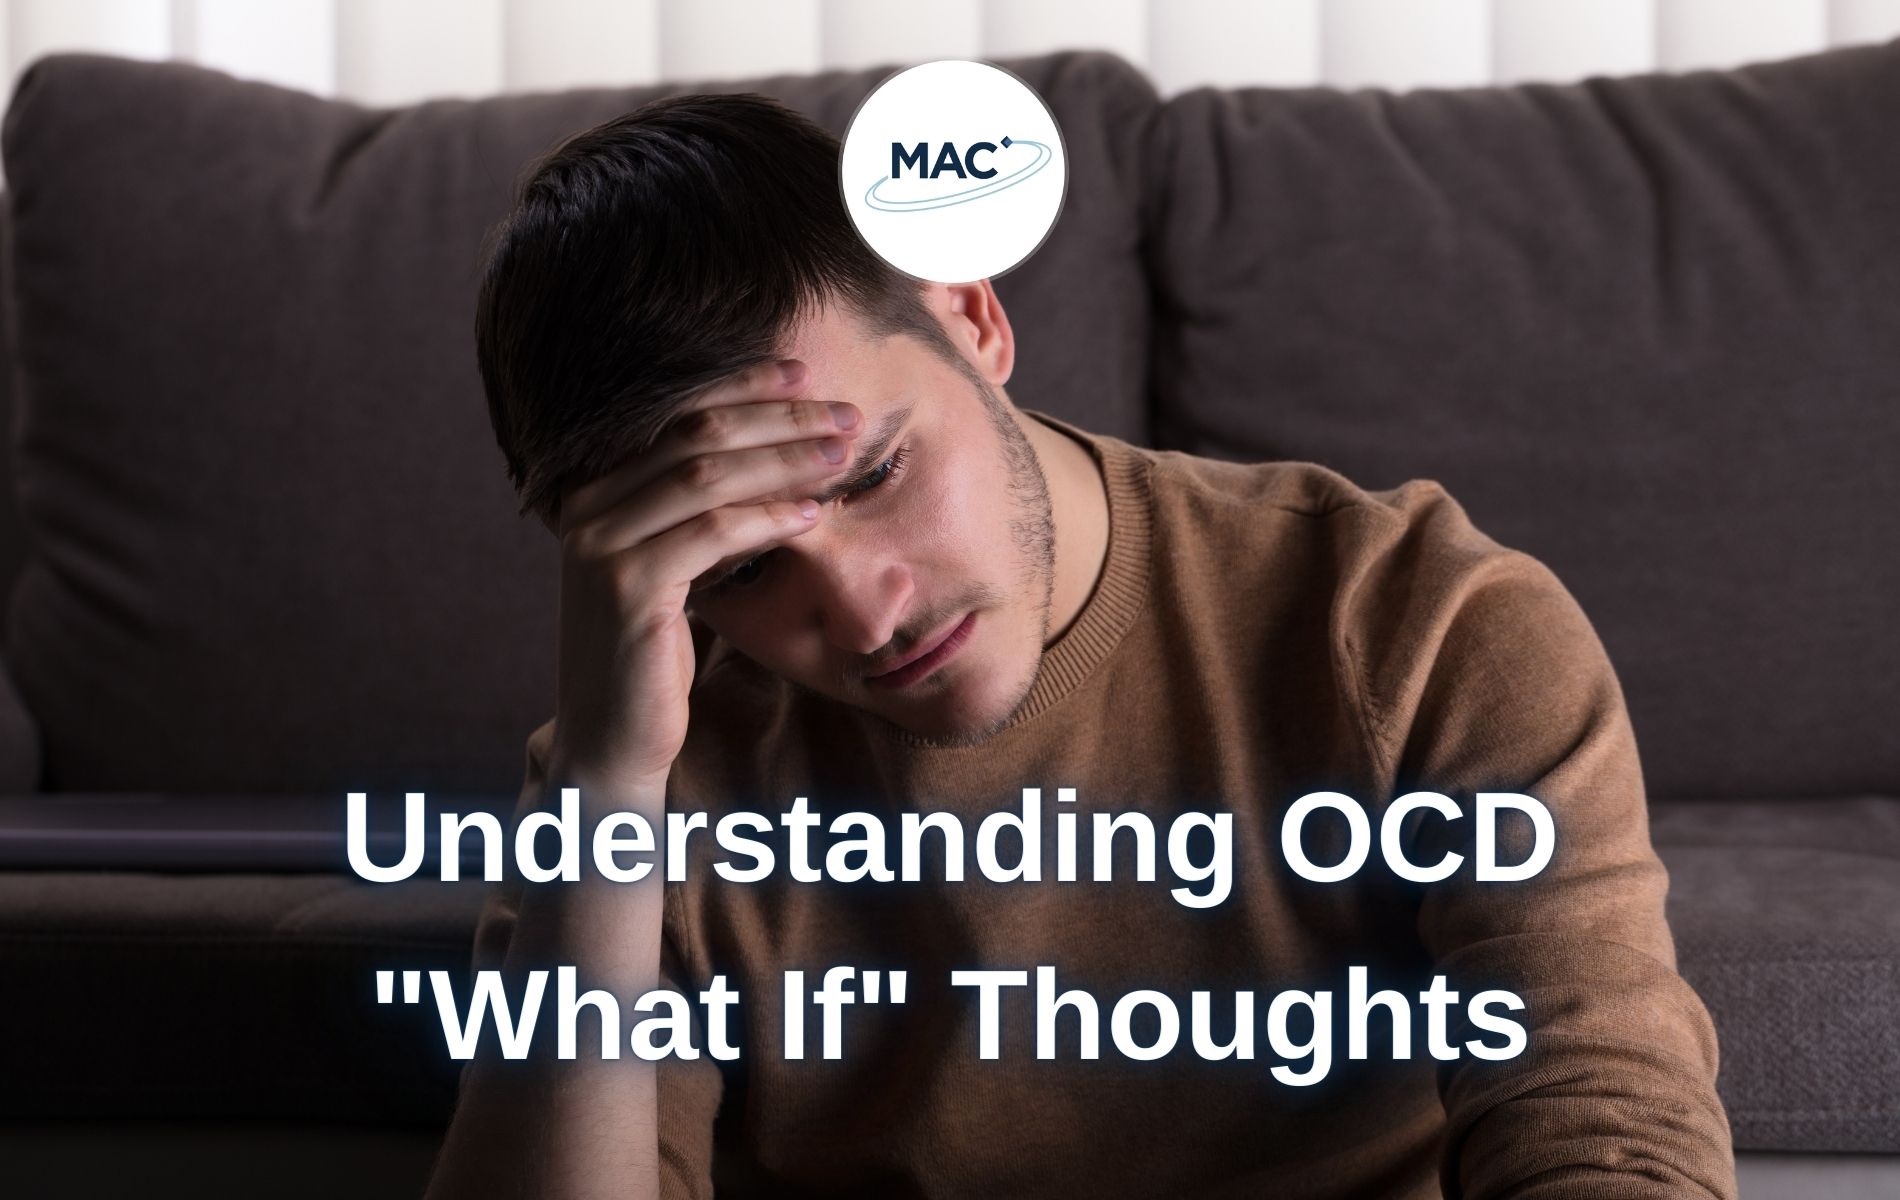 Understanding OCD thoughts